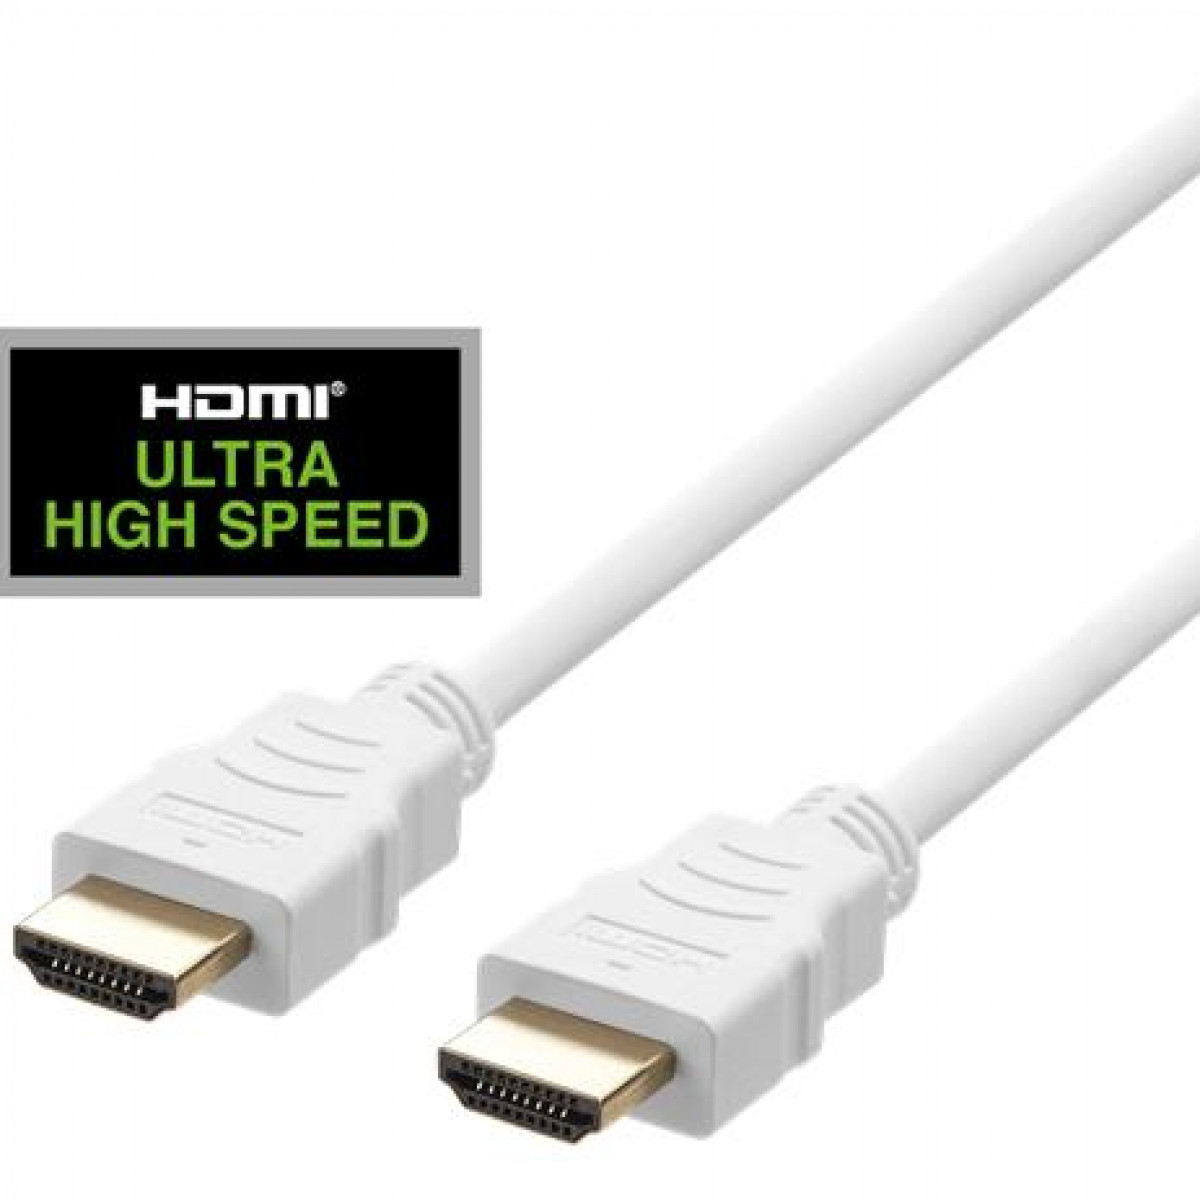 HDMI-Kabel DELTACO DELTACO 1m, HDMI-Kabel, Speed ULTRA weiß 48Gbps, High